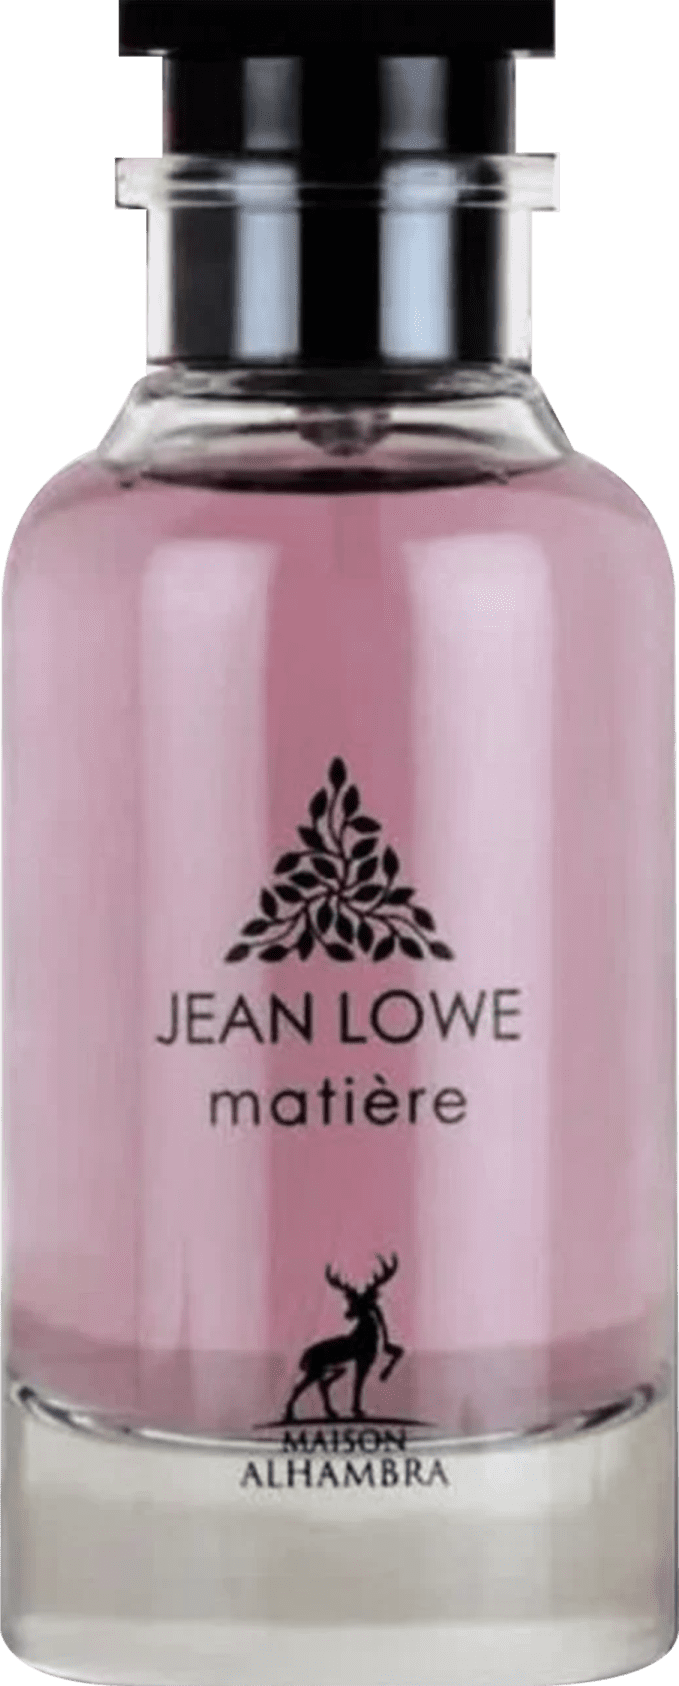 Jean Lowe Matiere by Maison Alhambra